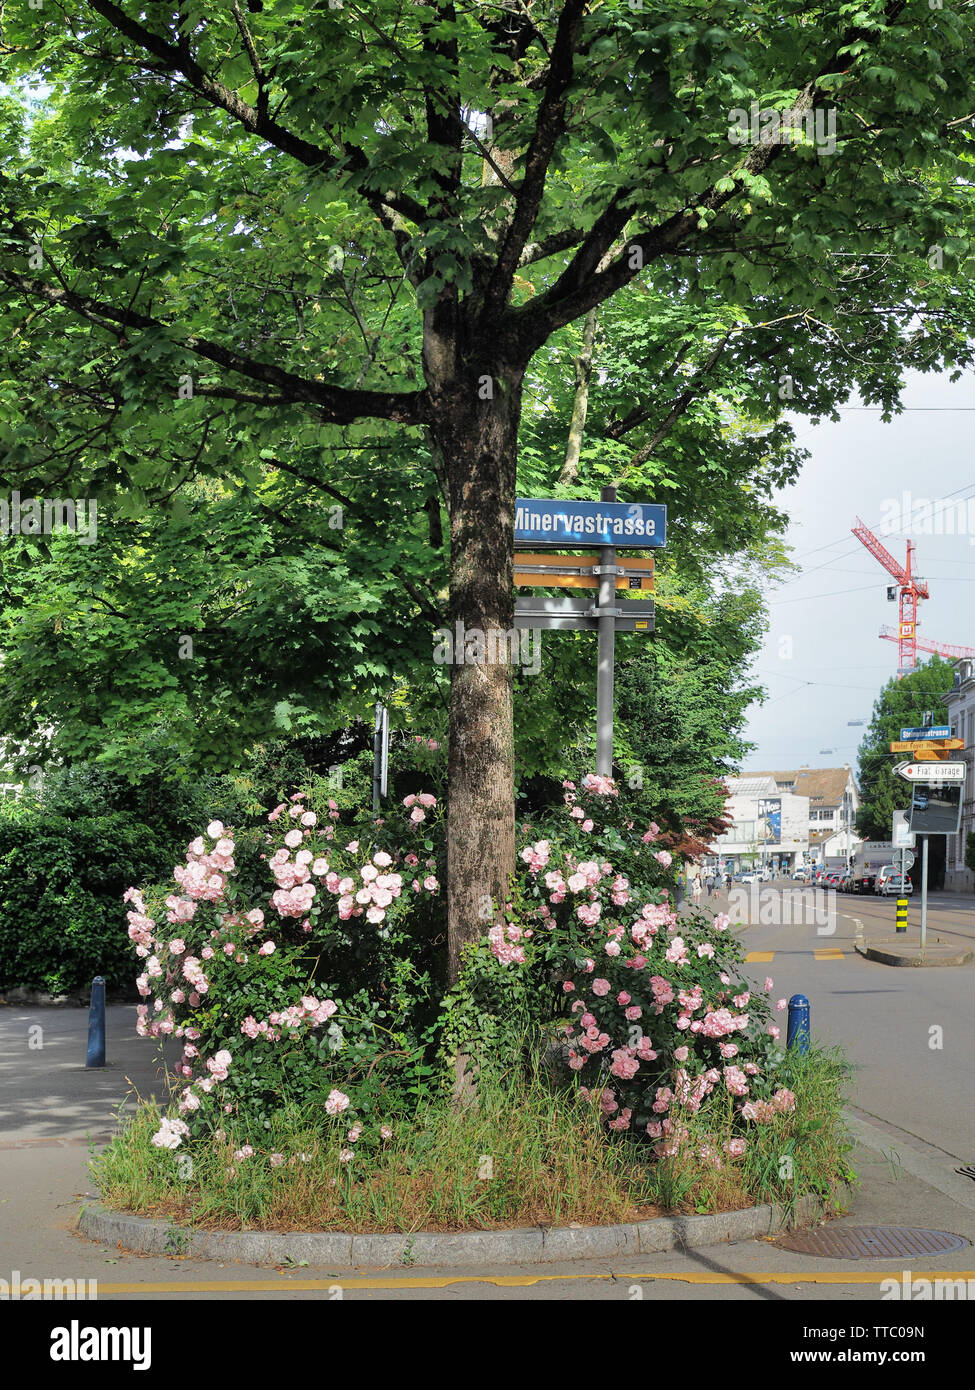 Strauchrosen auf Baumscheibe in der Stadt Zürich Stock Photo